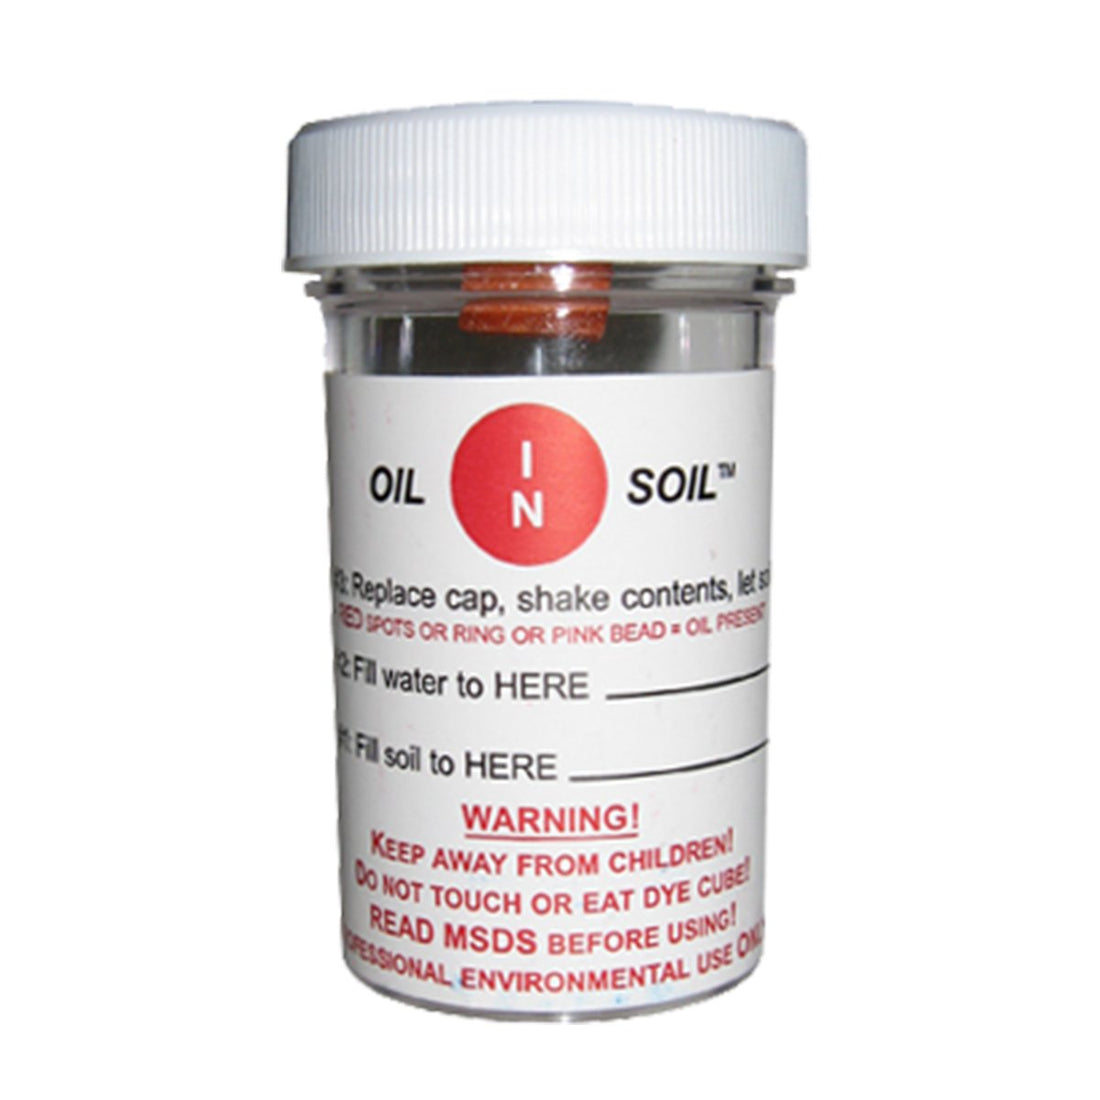 Oil in Soil Screening Kit